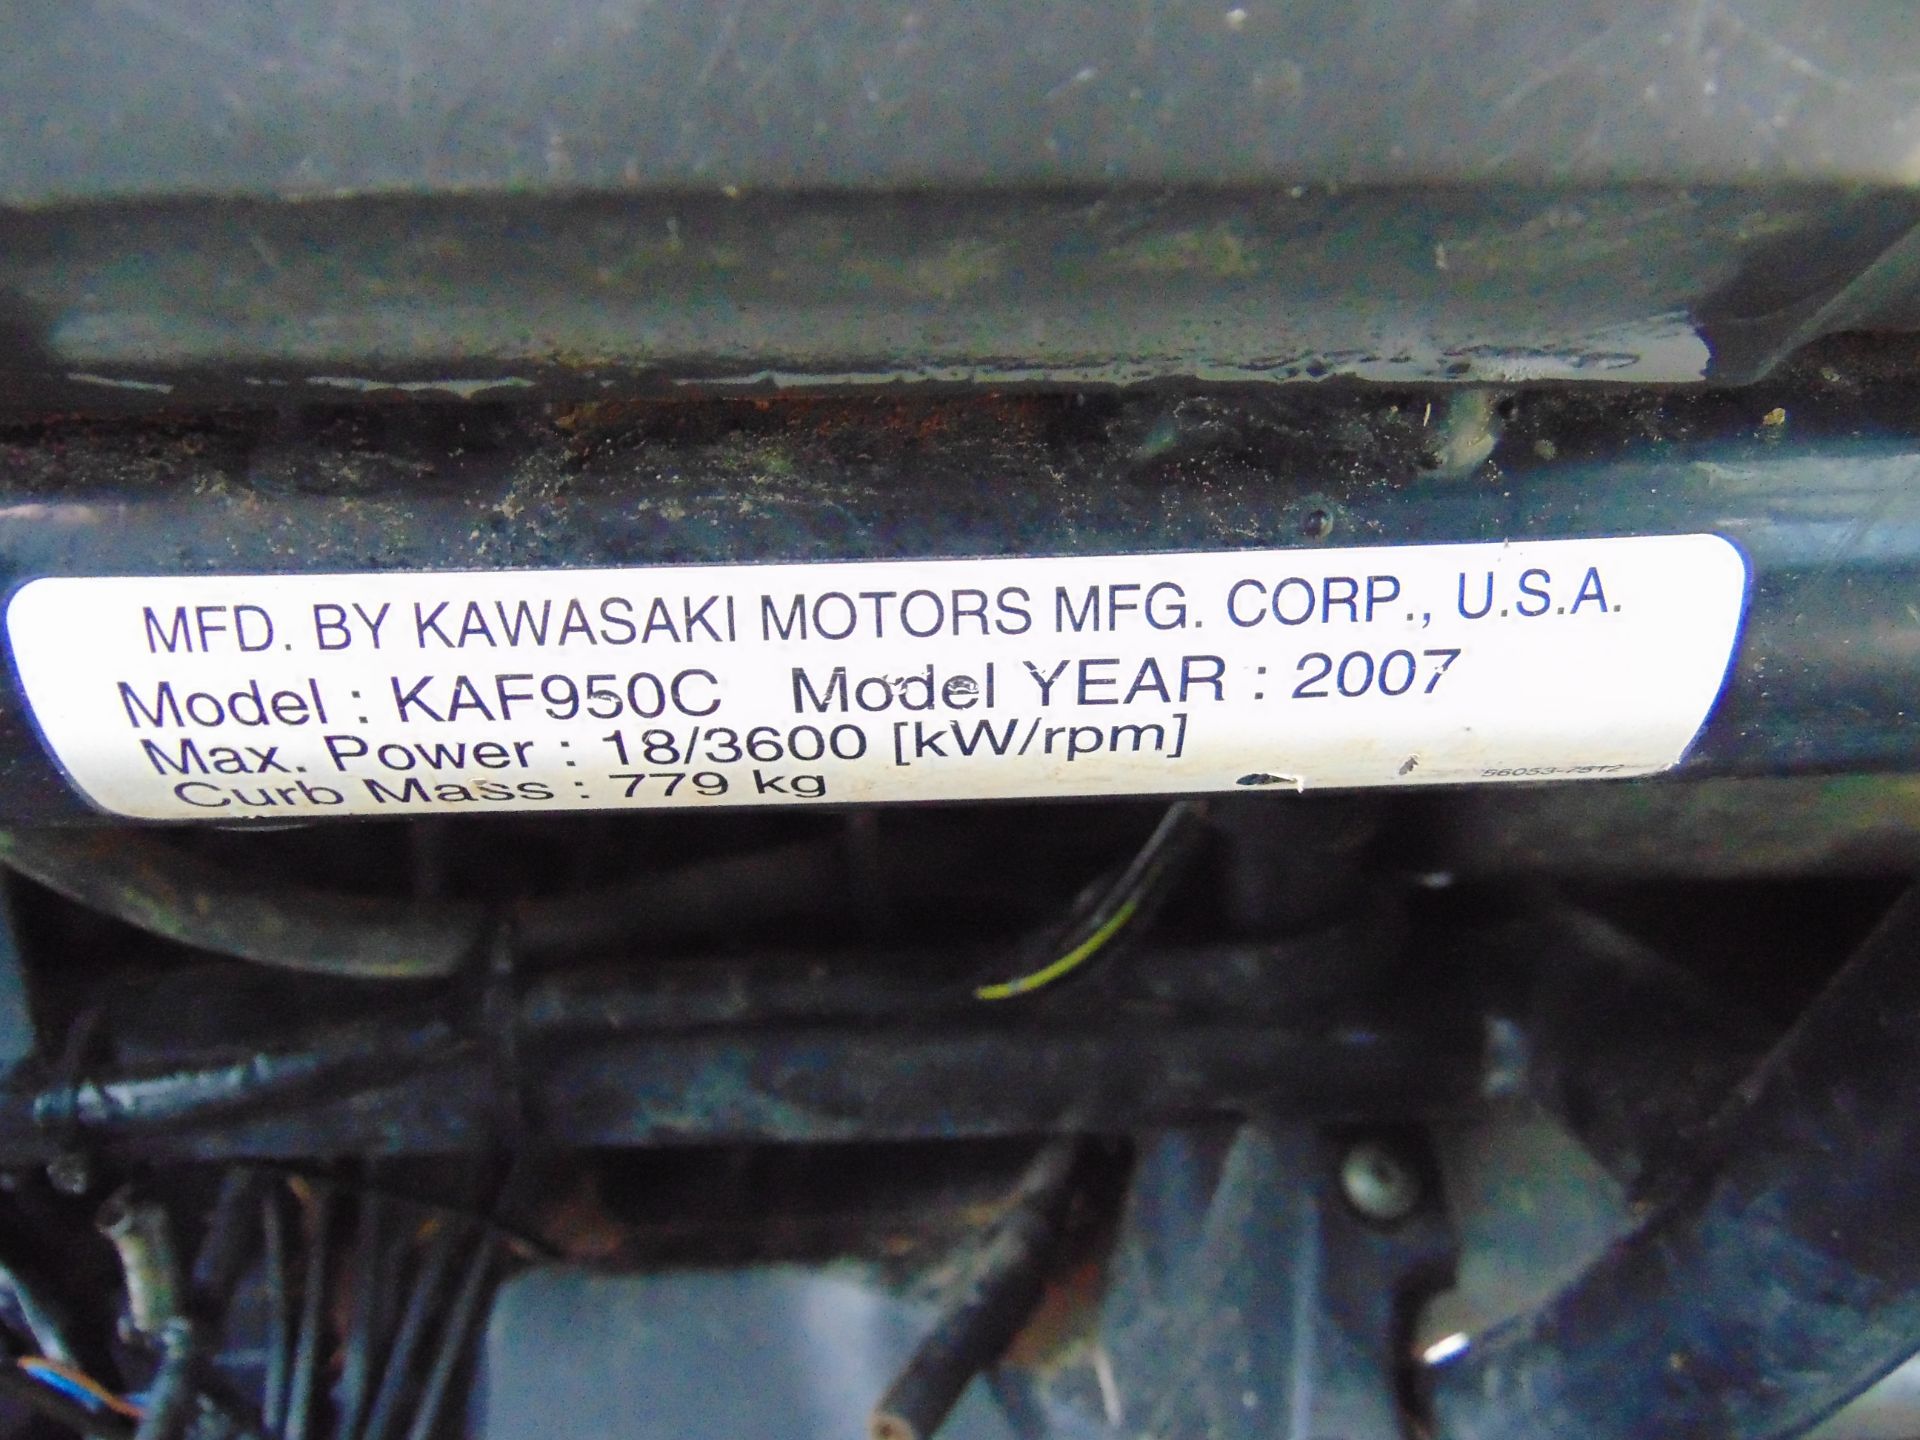 Kawasaki Mule 4010 4WD Diesel Utility Vehicle UTV ONLY 2,934 HOURS! - Image 13 of 21